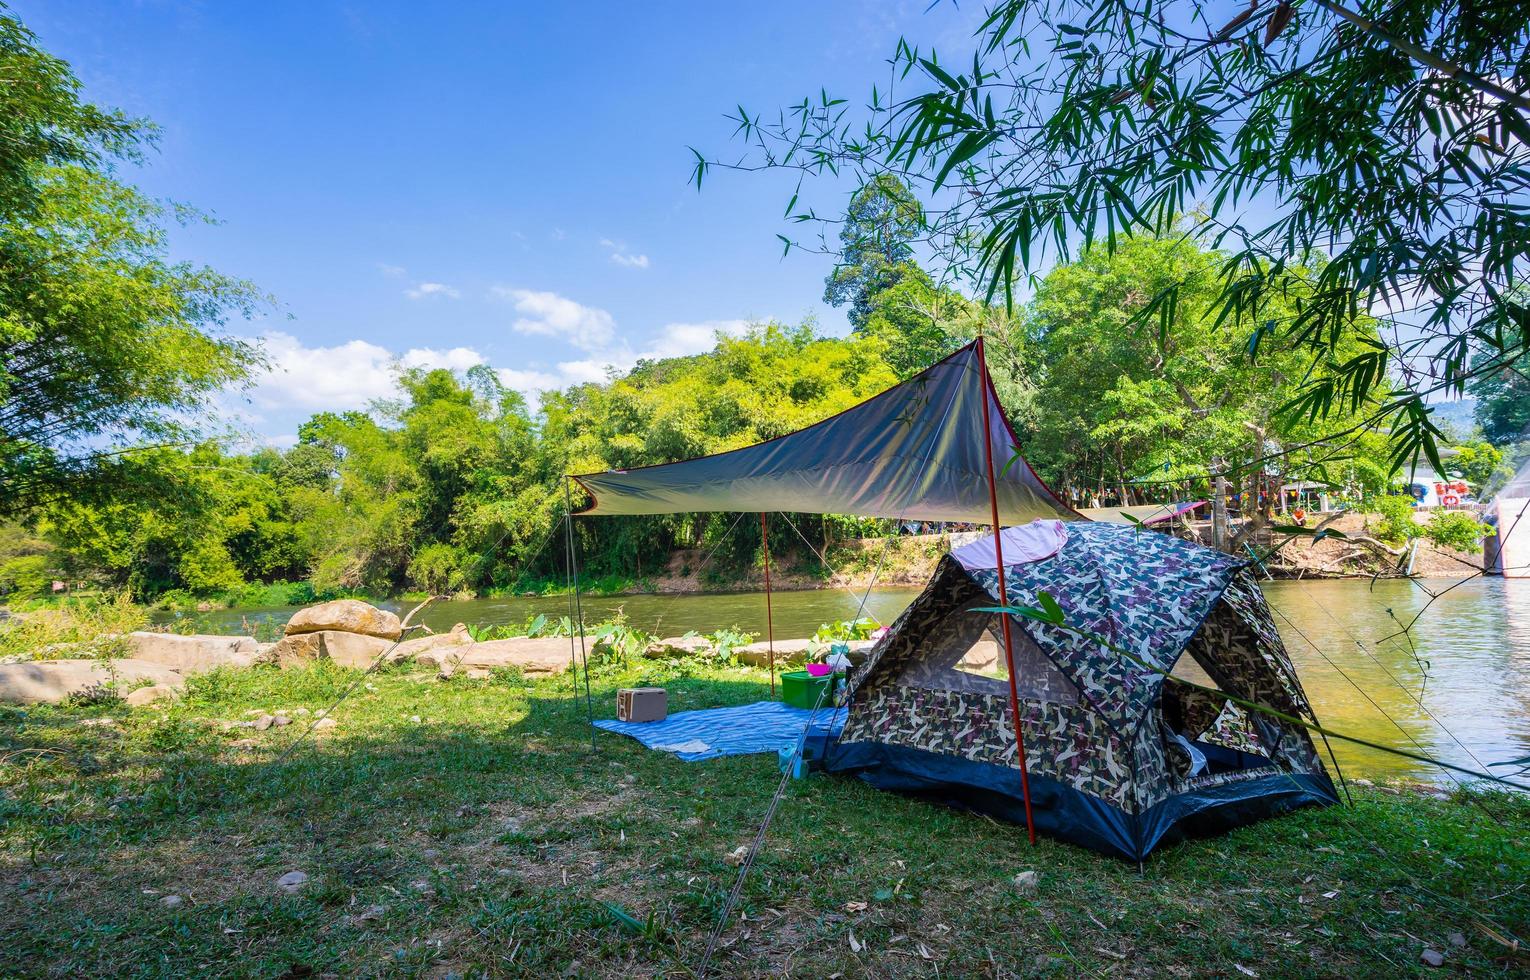 camping et tente dans la nature au bord de la rivière photo